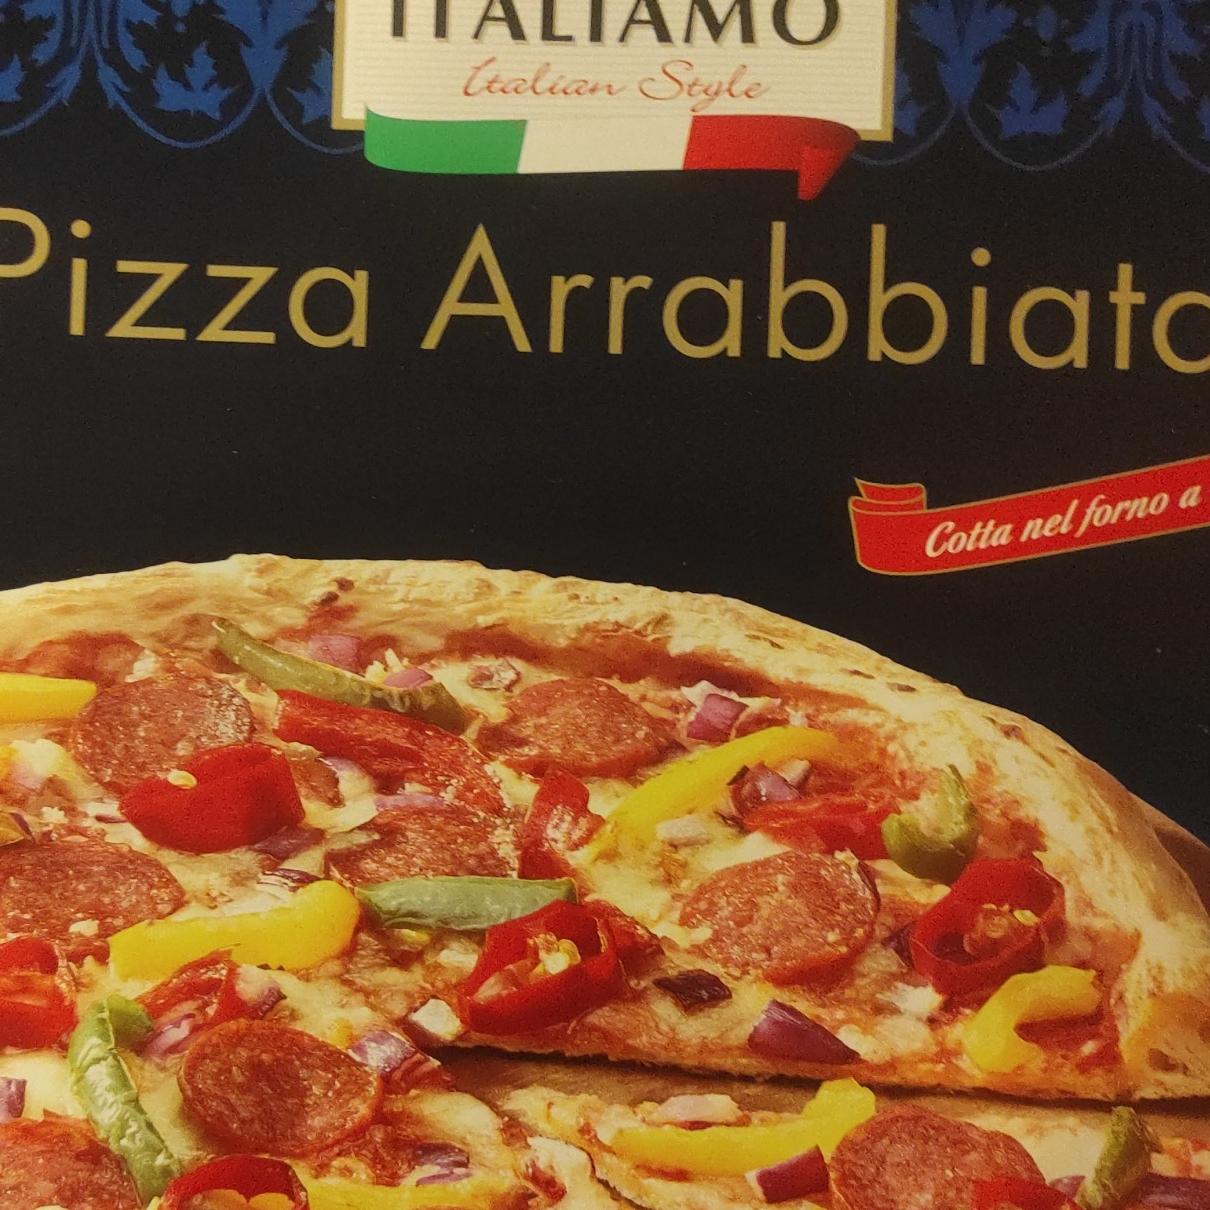 Фото - Pizza arrabbiata italiamo